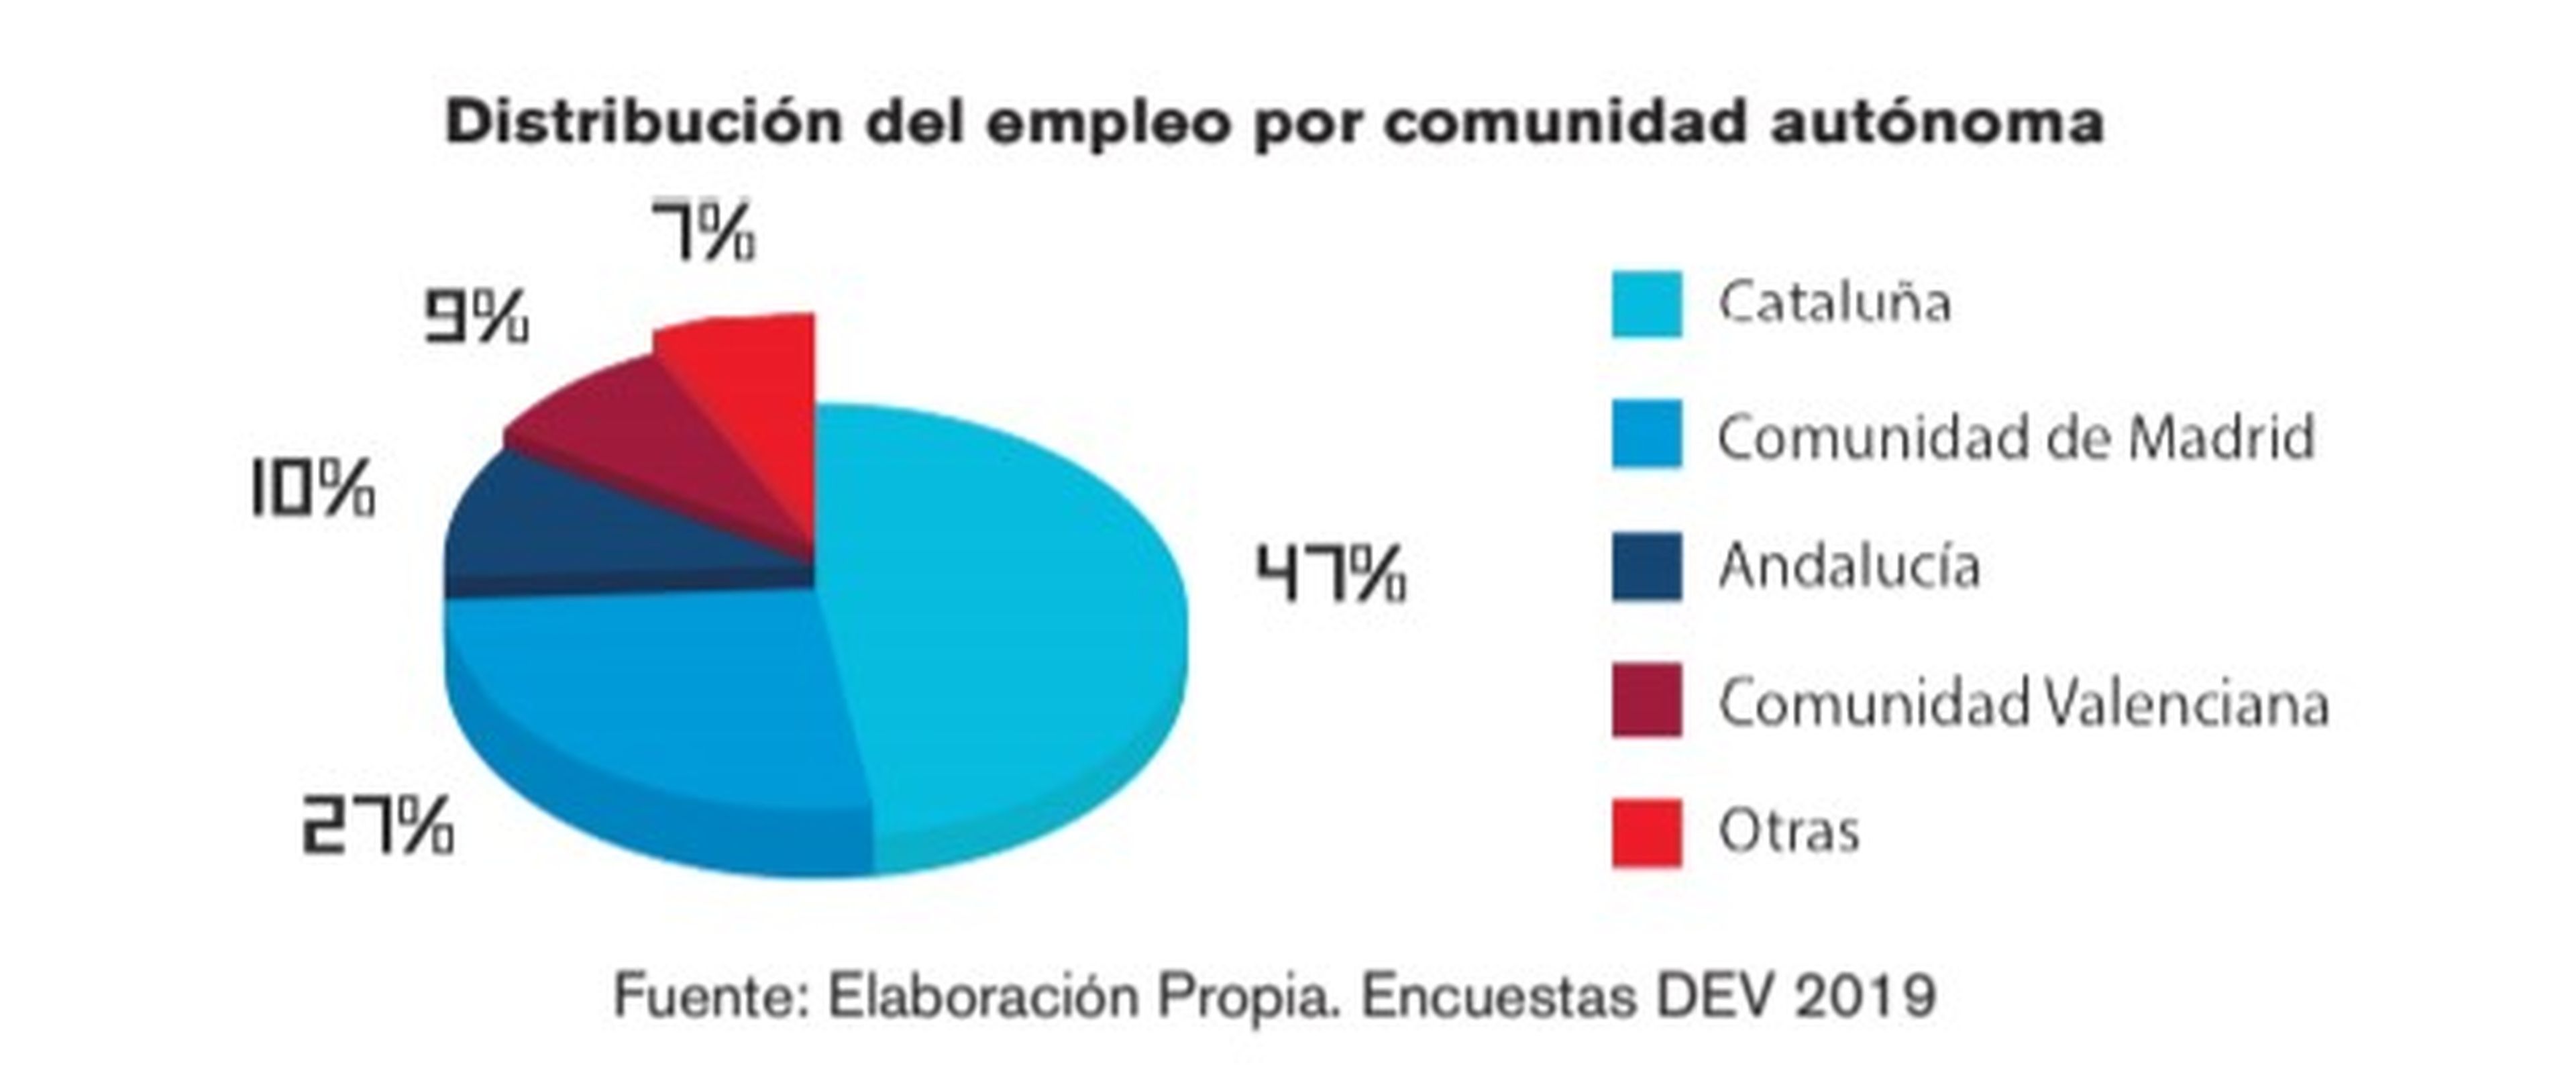 Distribución del empleo por comunidad autónoma